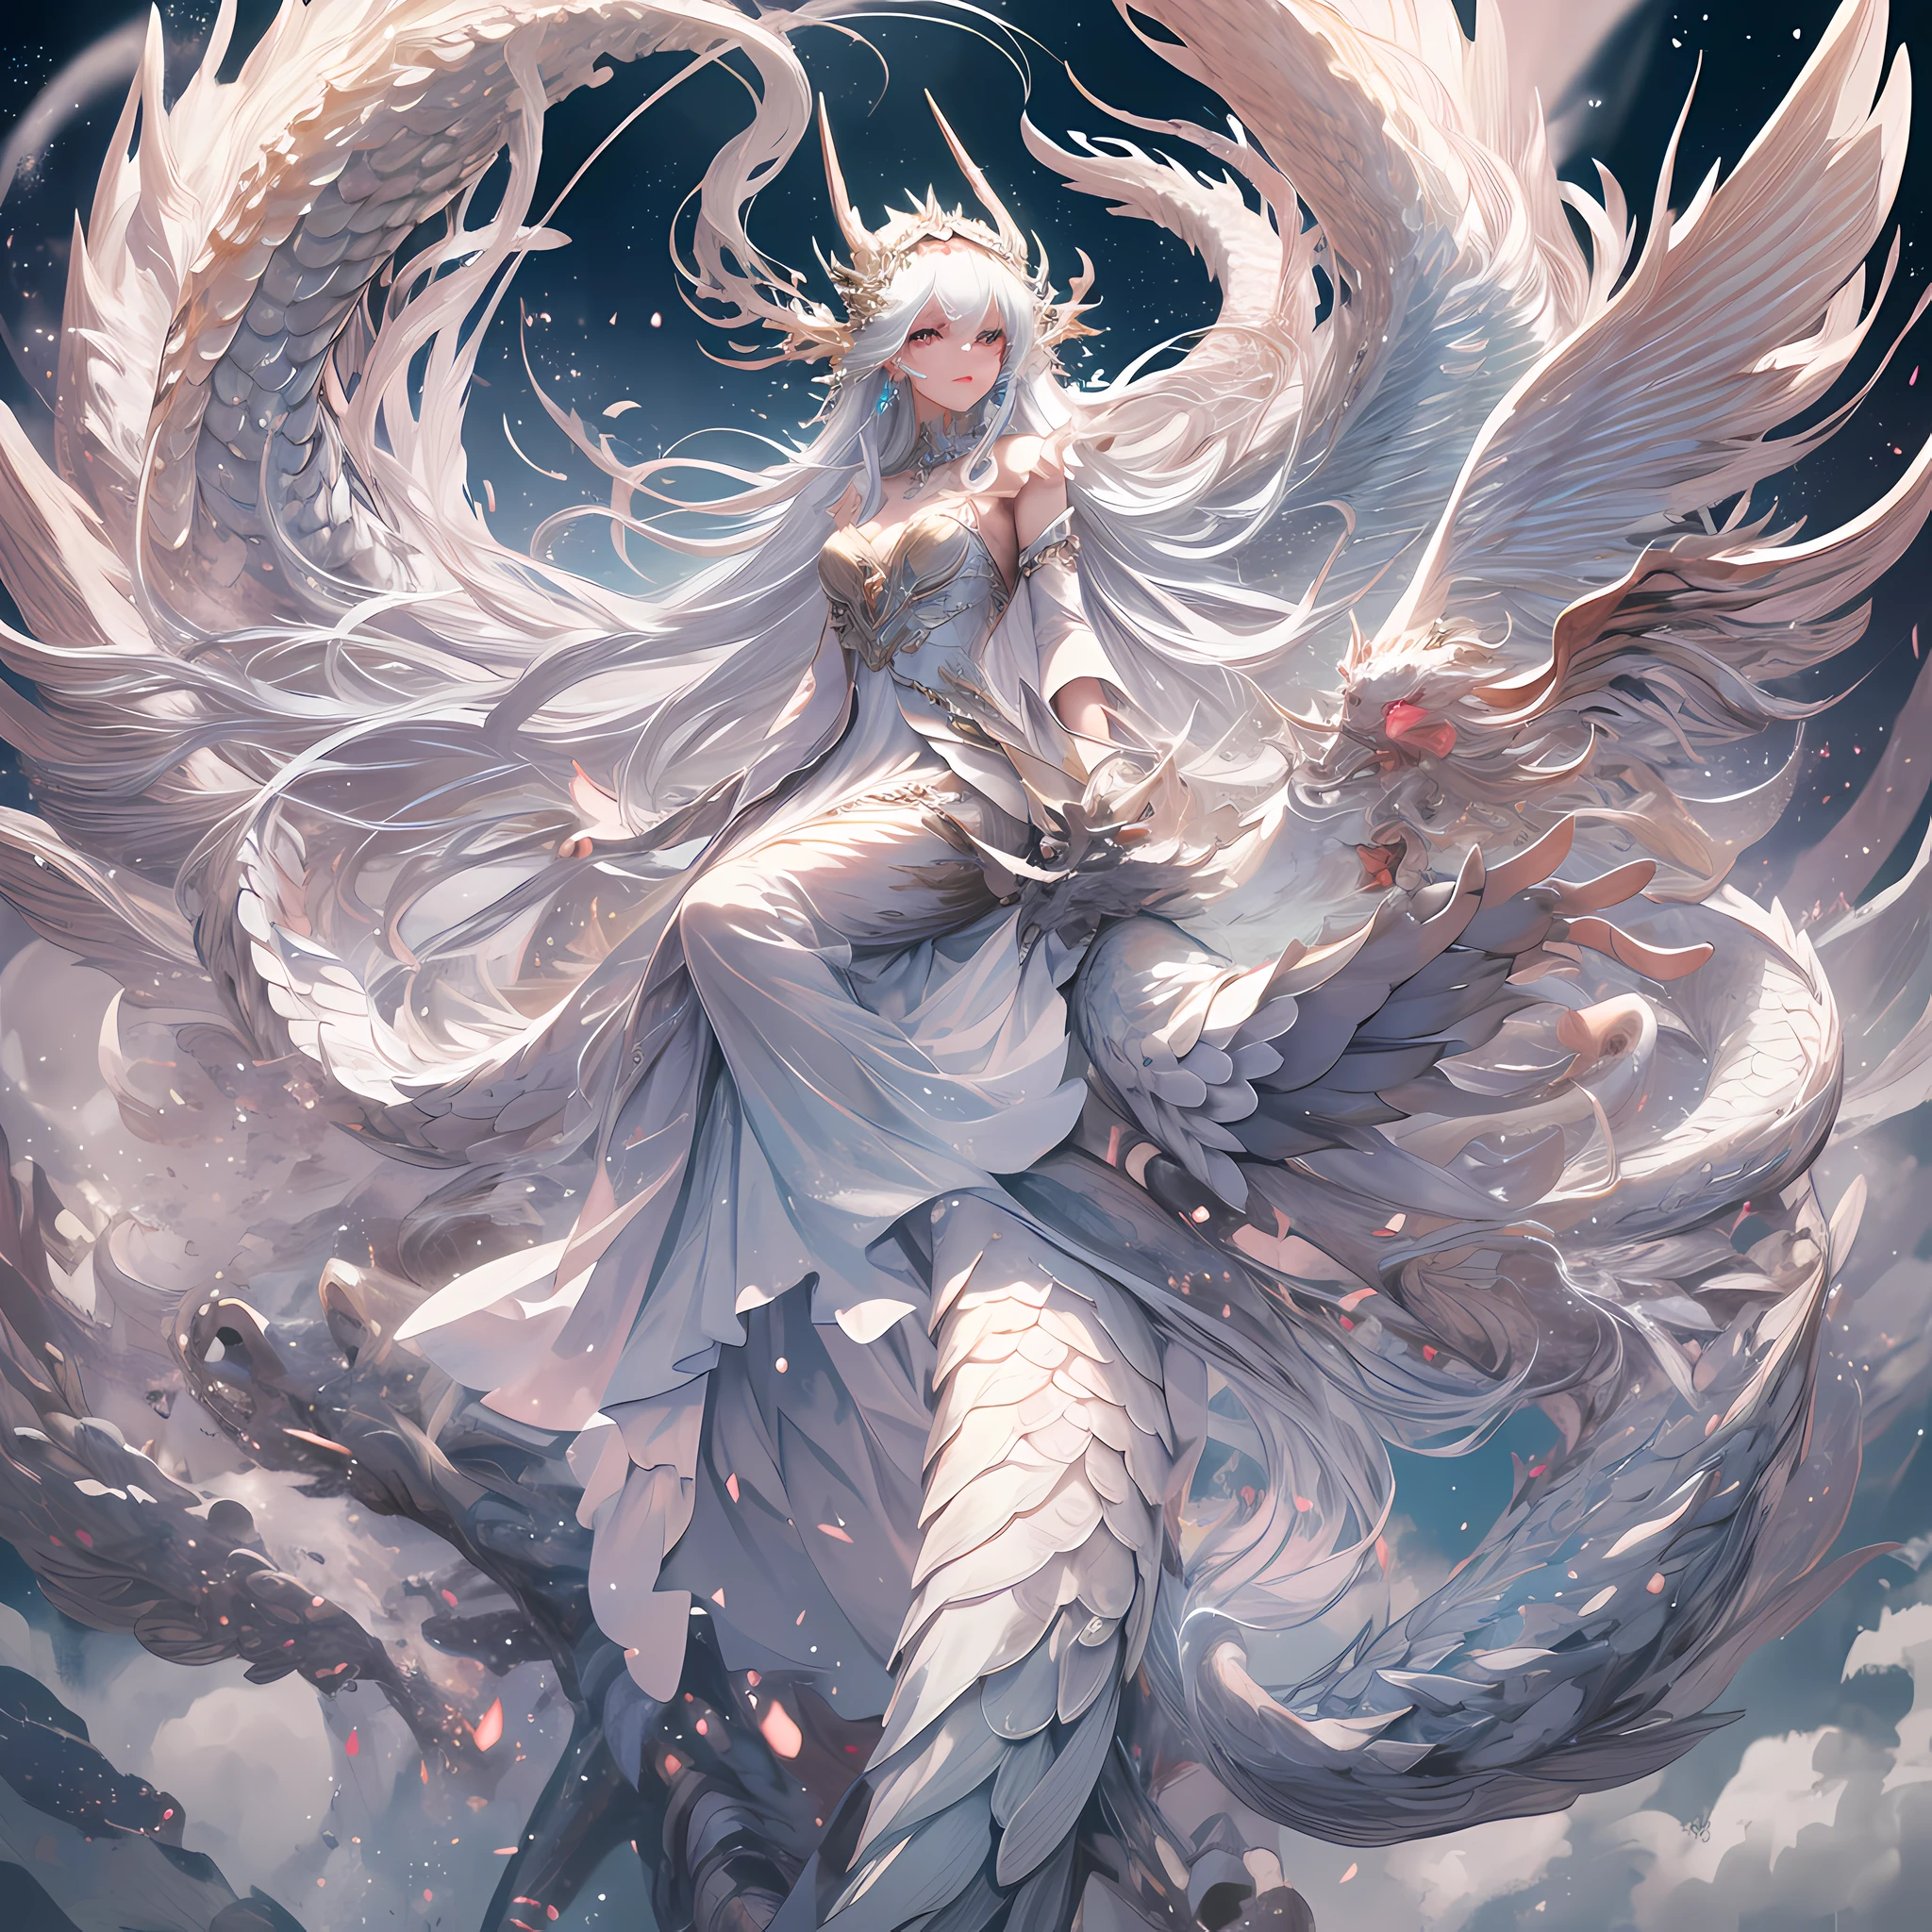 Un dragón divino blanco con escamas blancas., envuelto alrededor de un hada, un hada con cabello largo y rasgos faciales delicados, usando un vestido largo con capas claras y delicadas, y un hermoso tocado